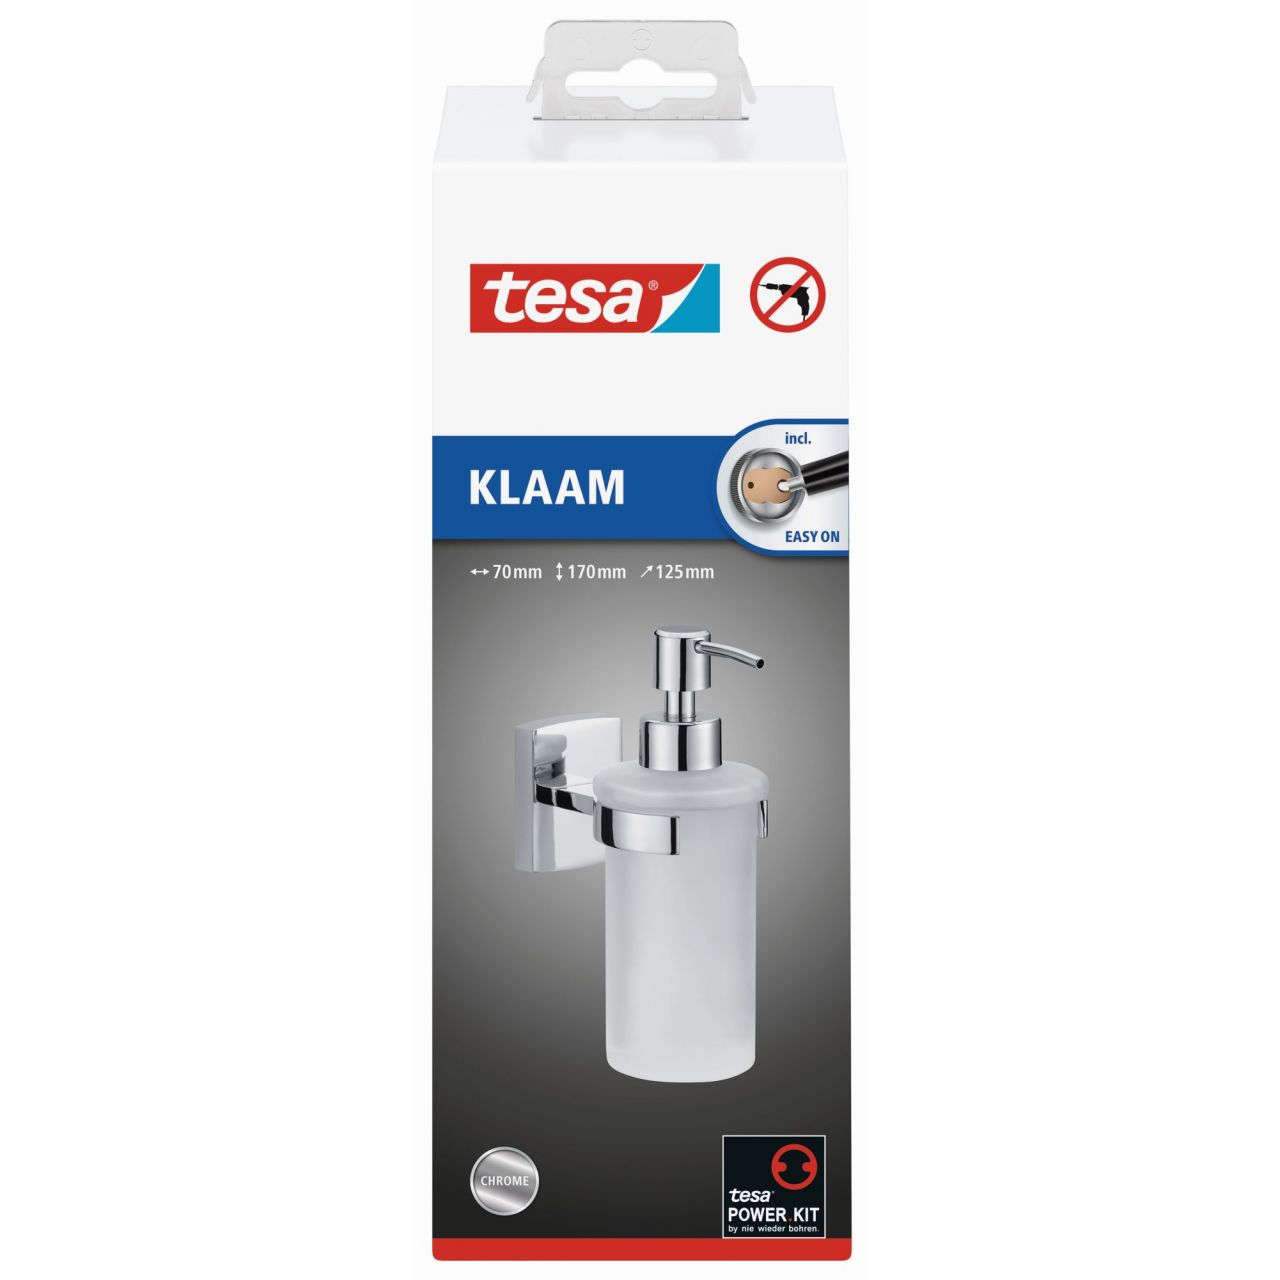 tesa Klaam Dispensador de jabón (Kit recambio BK20-1)